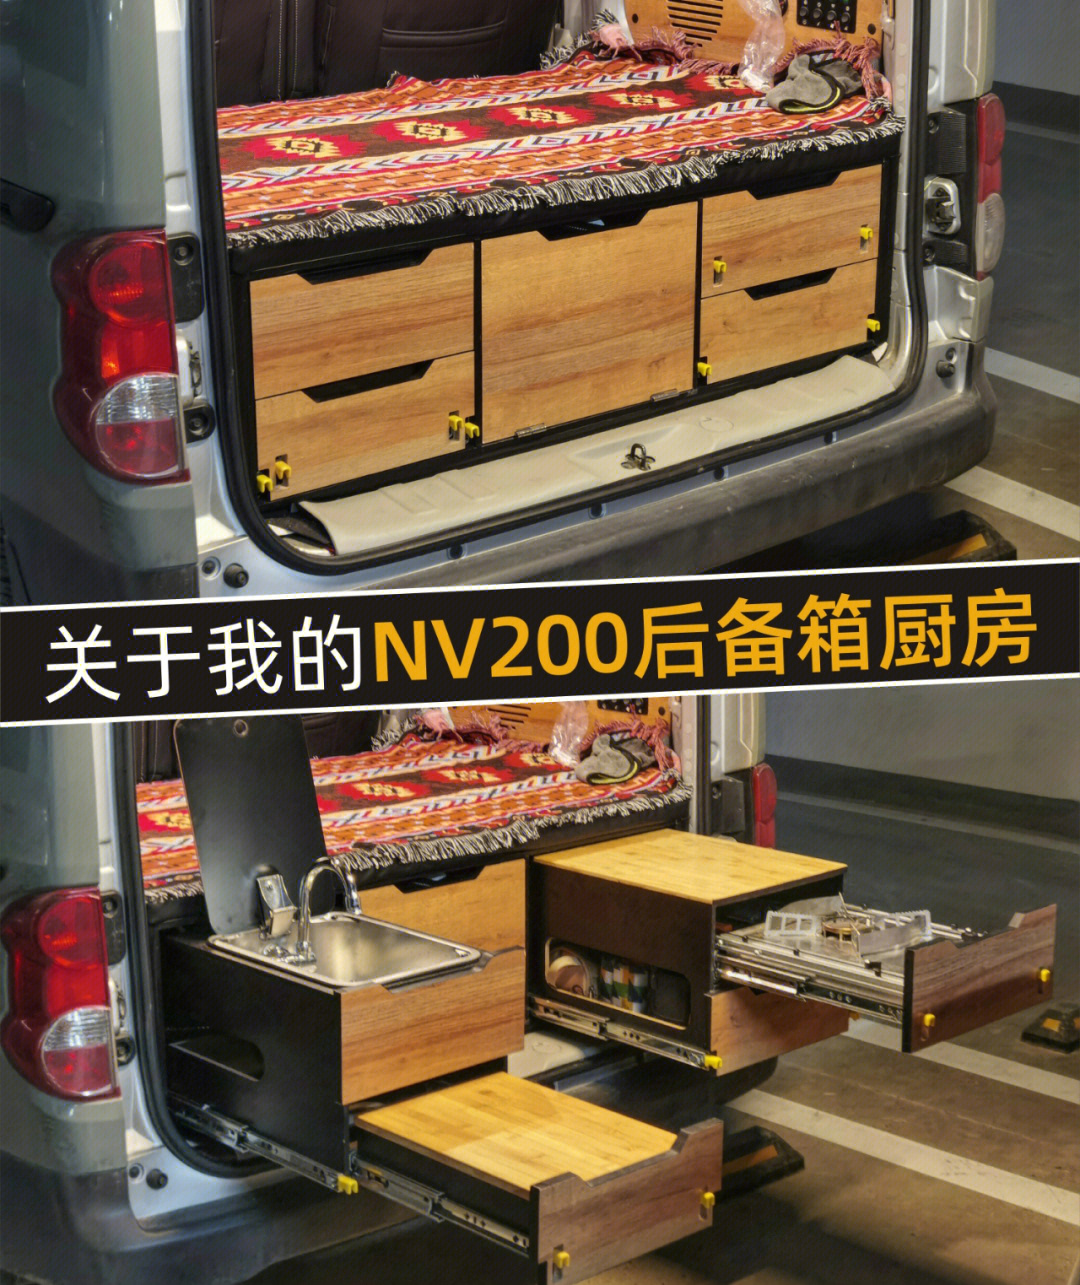 汽车后备箱集成厨房图片